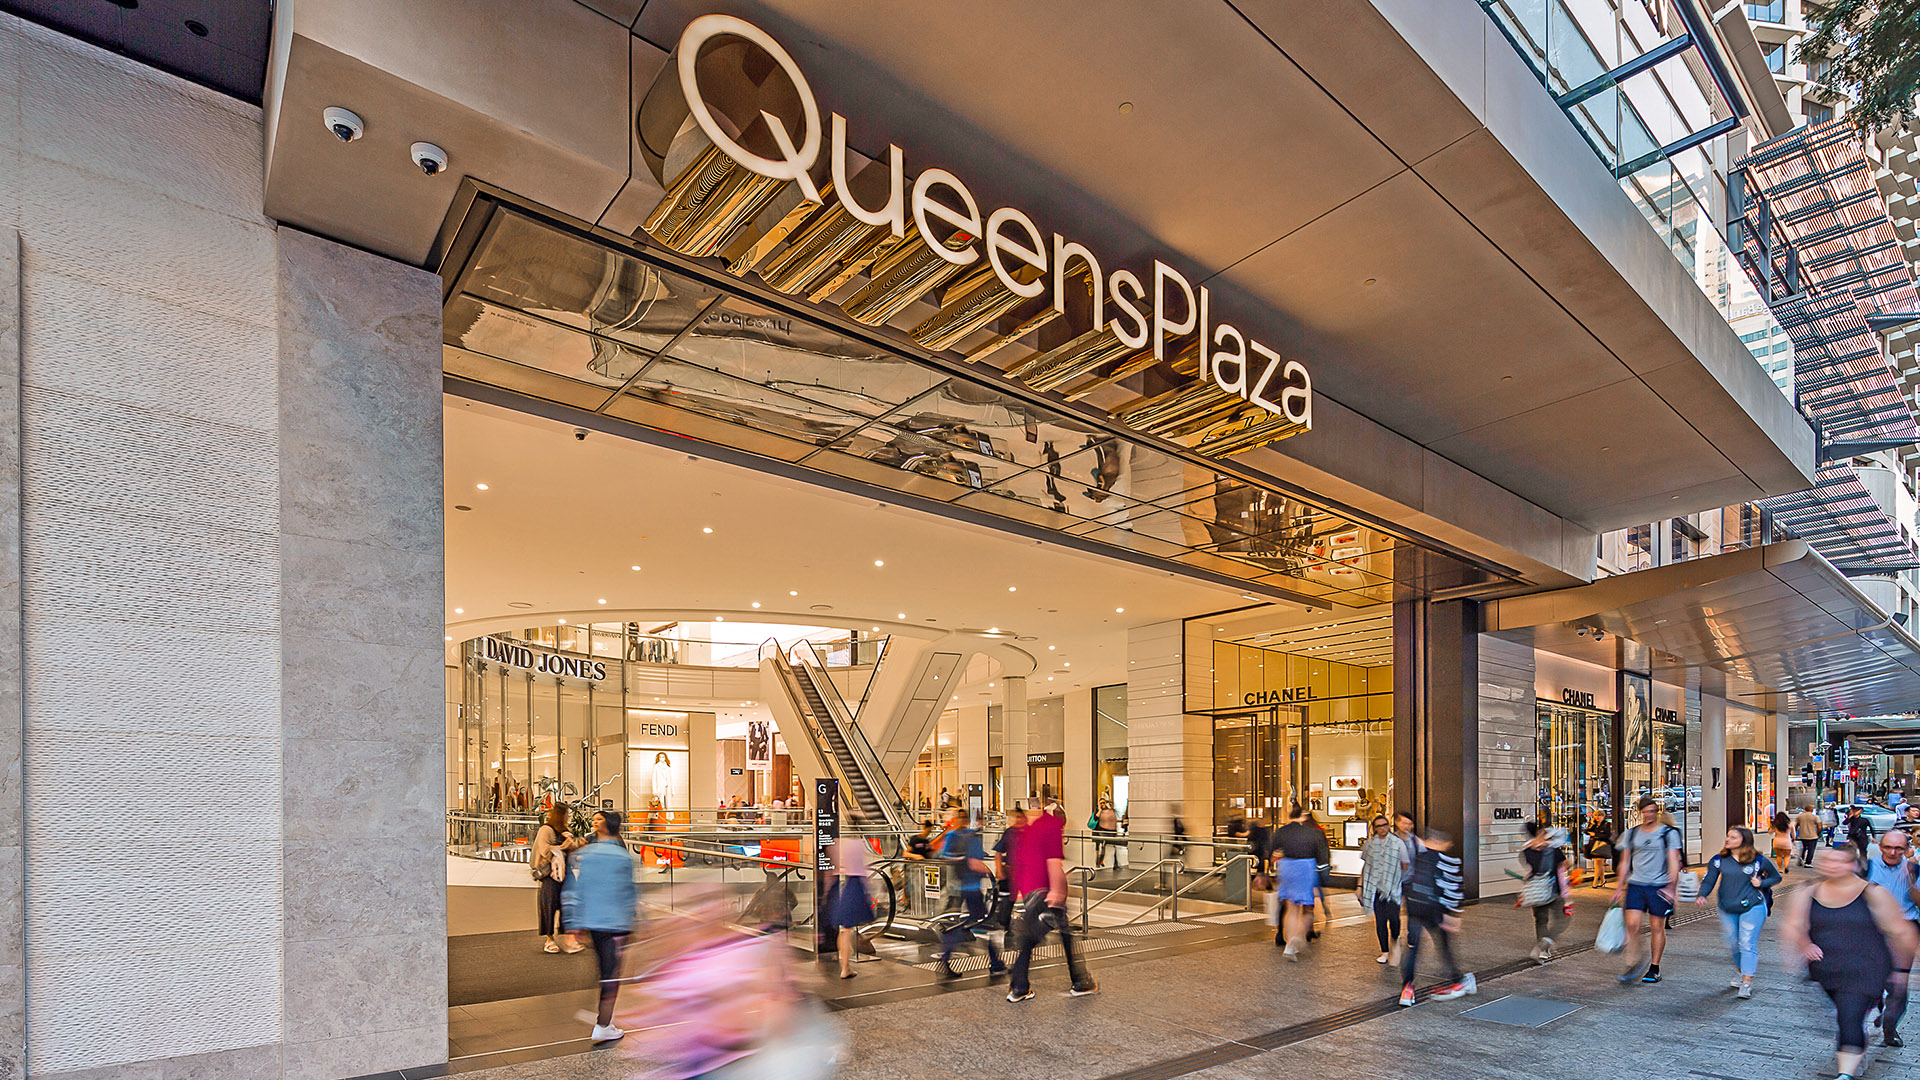 Queen Plaza - Queen Street